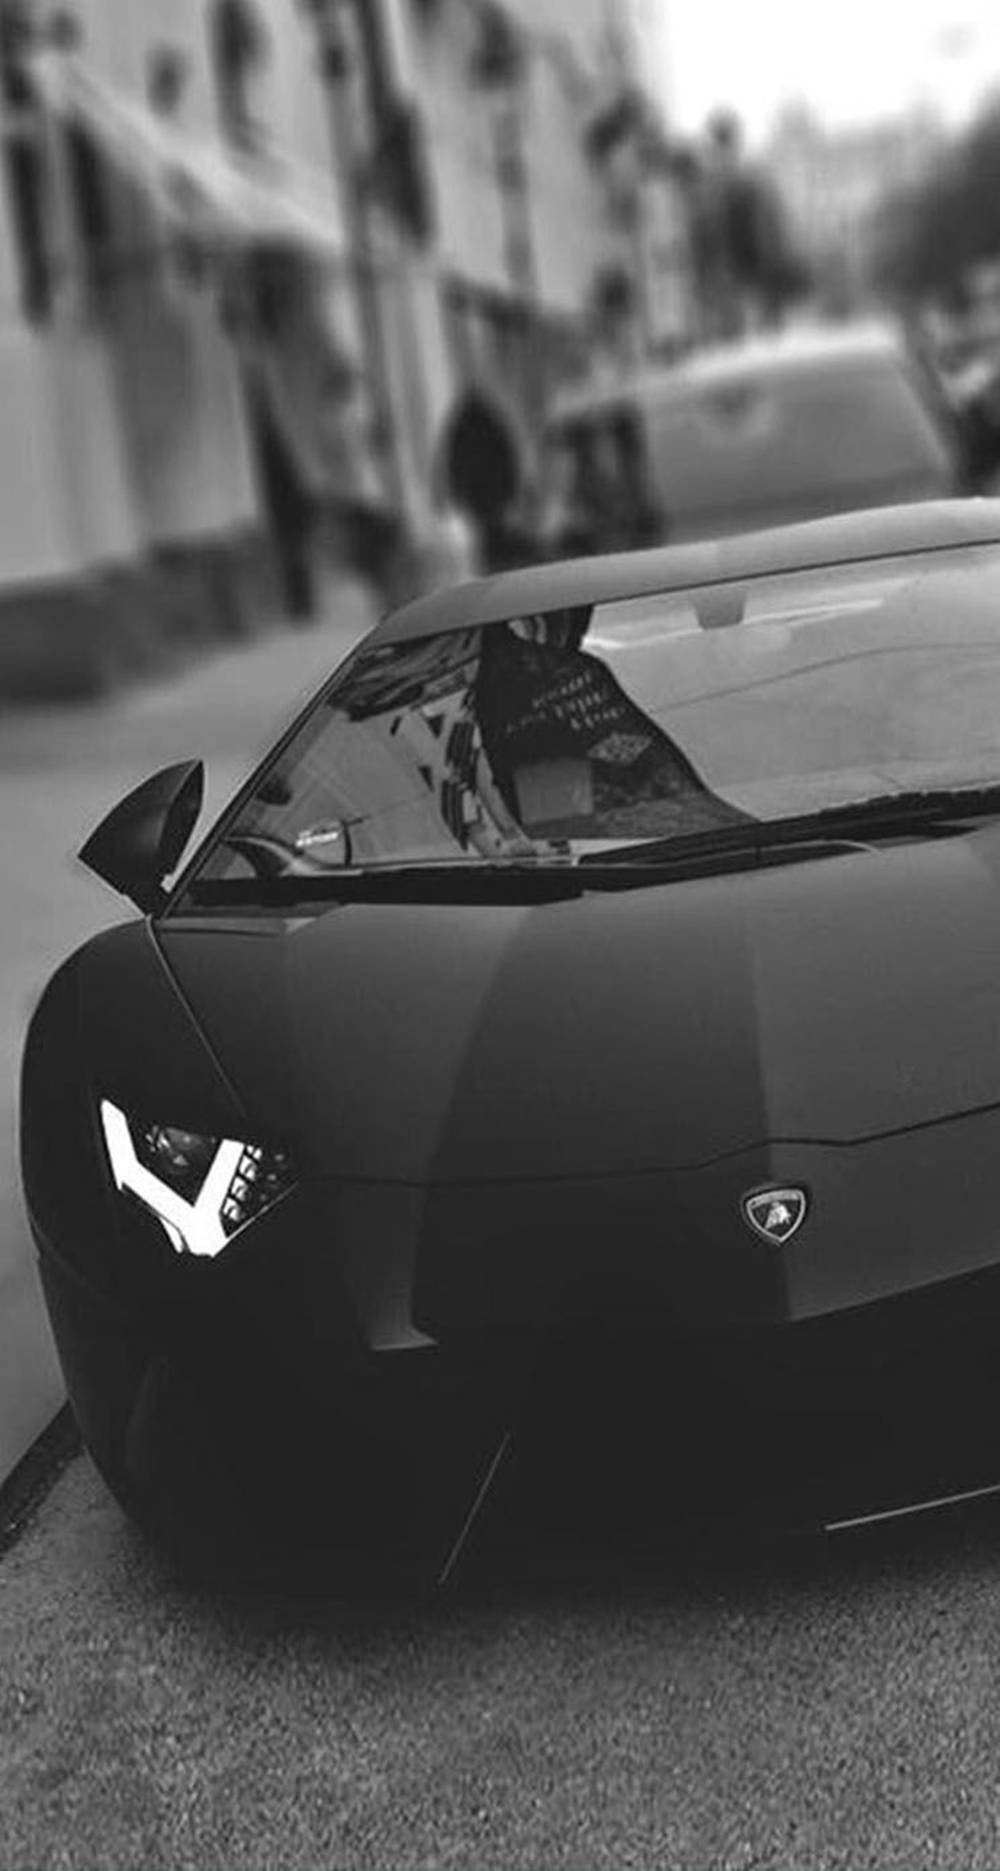 Stunning Iphone Lamborghini Display